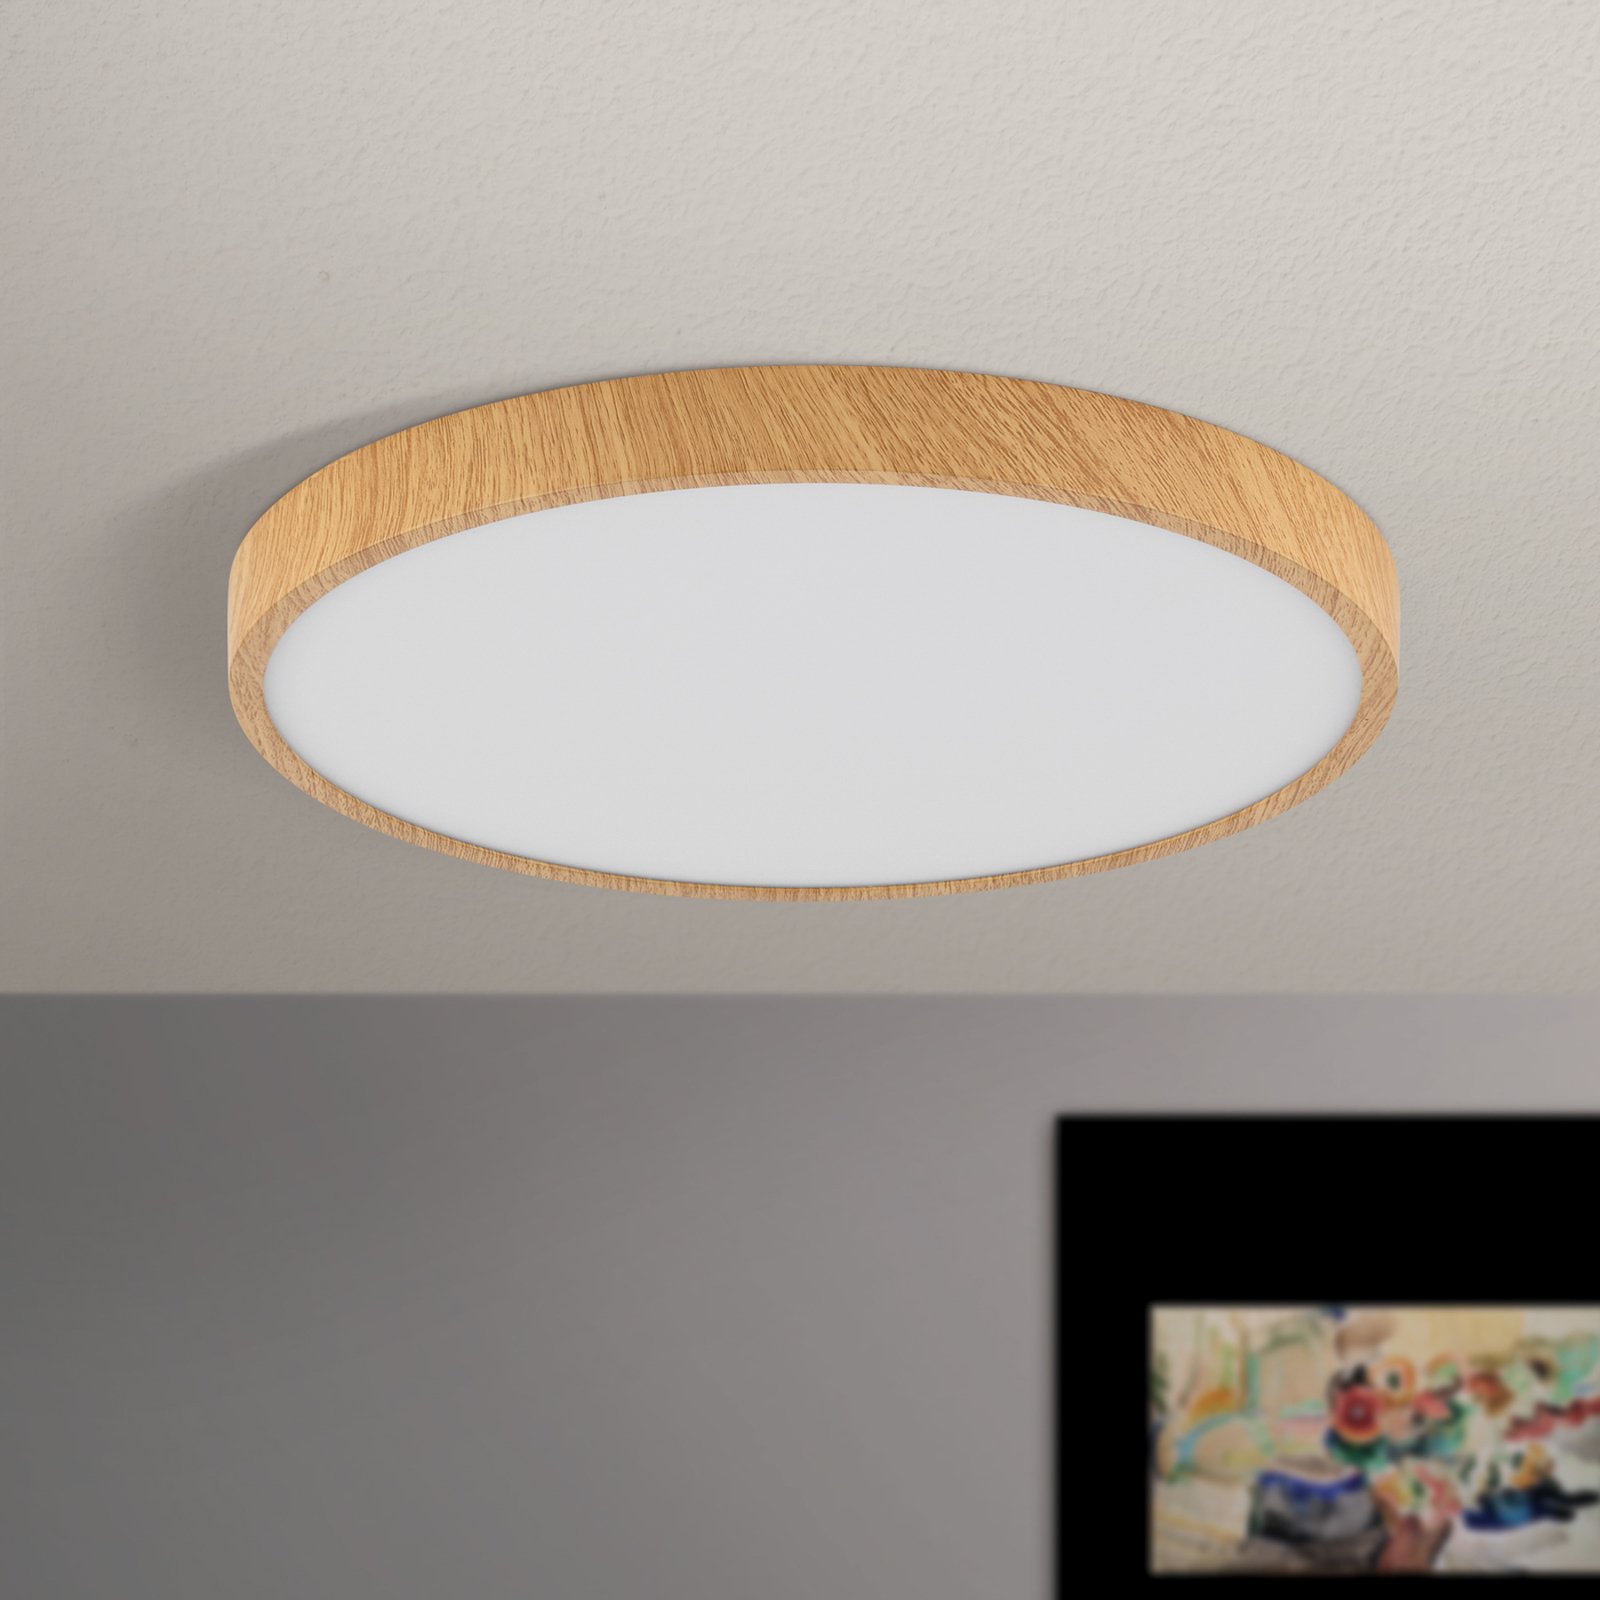 LED-taklampa Bully med träoptik, Ø 28 cm